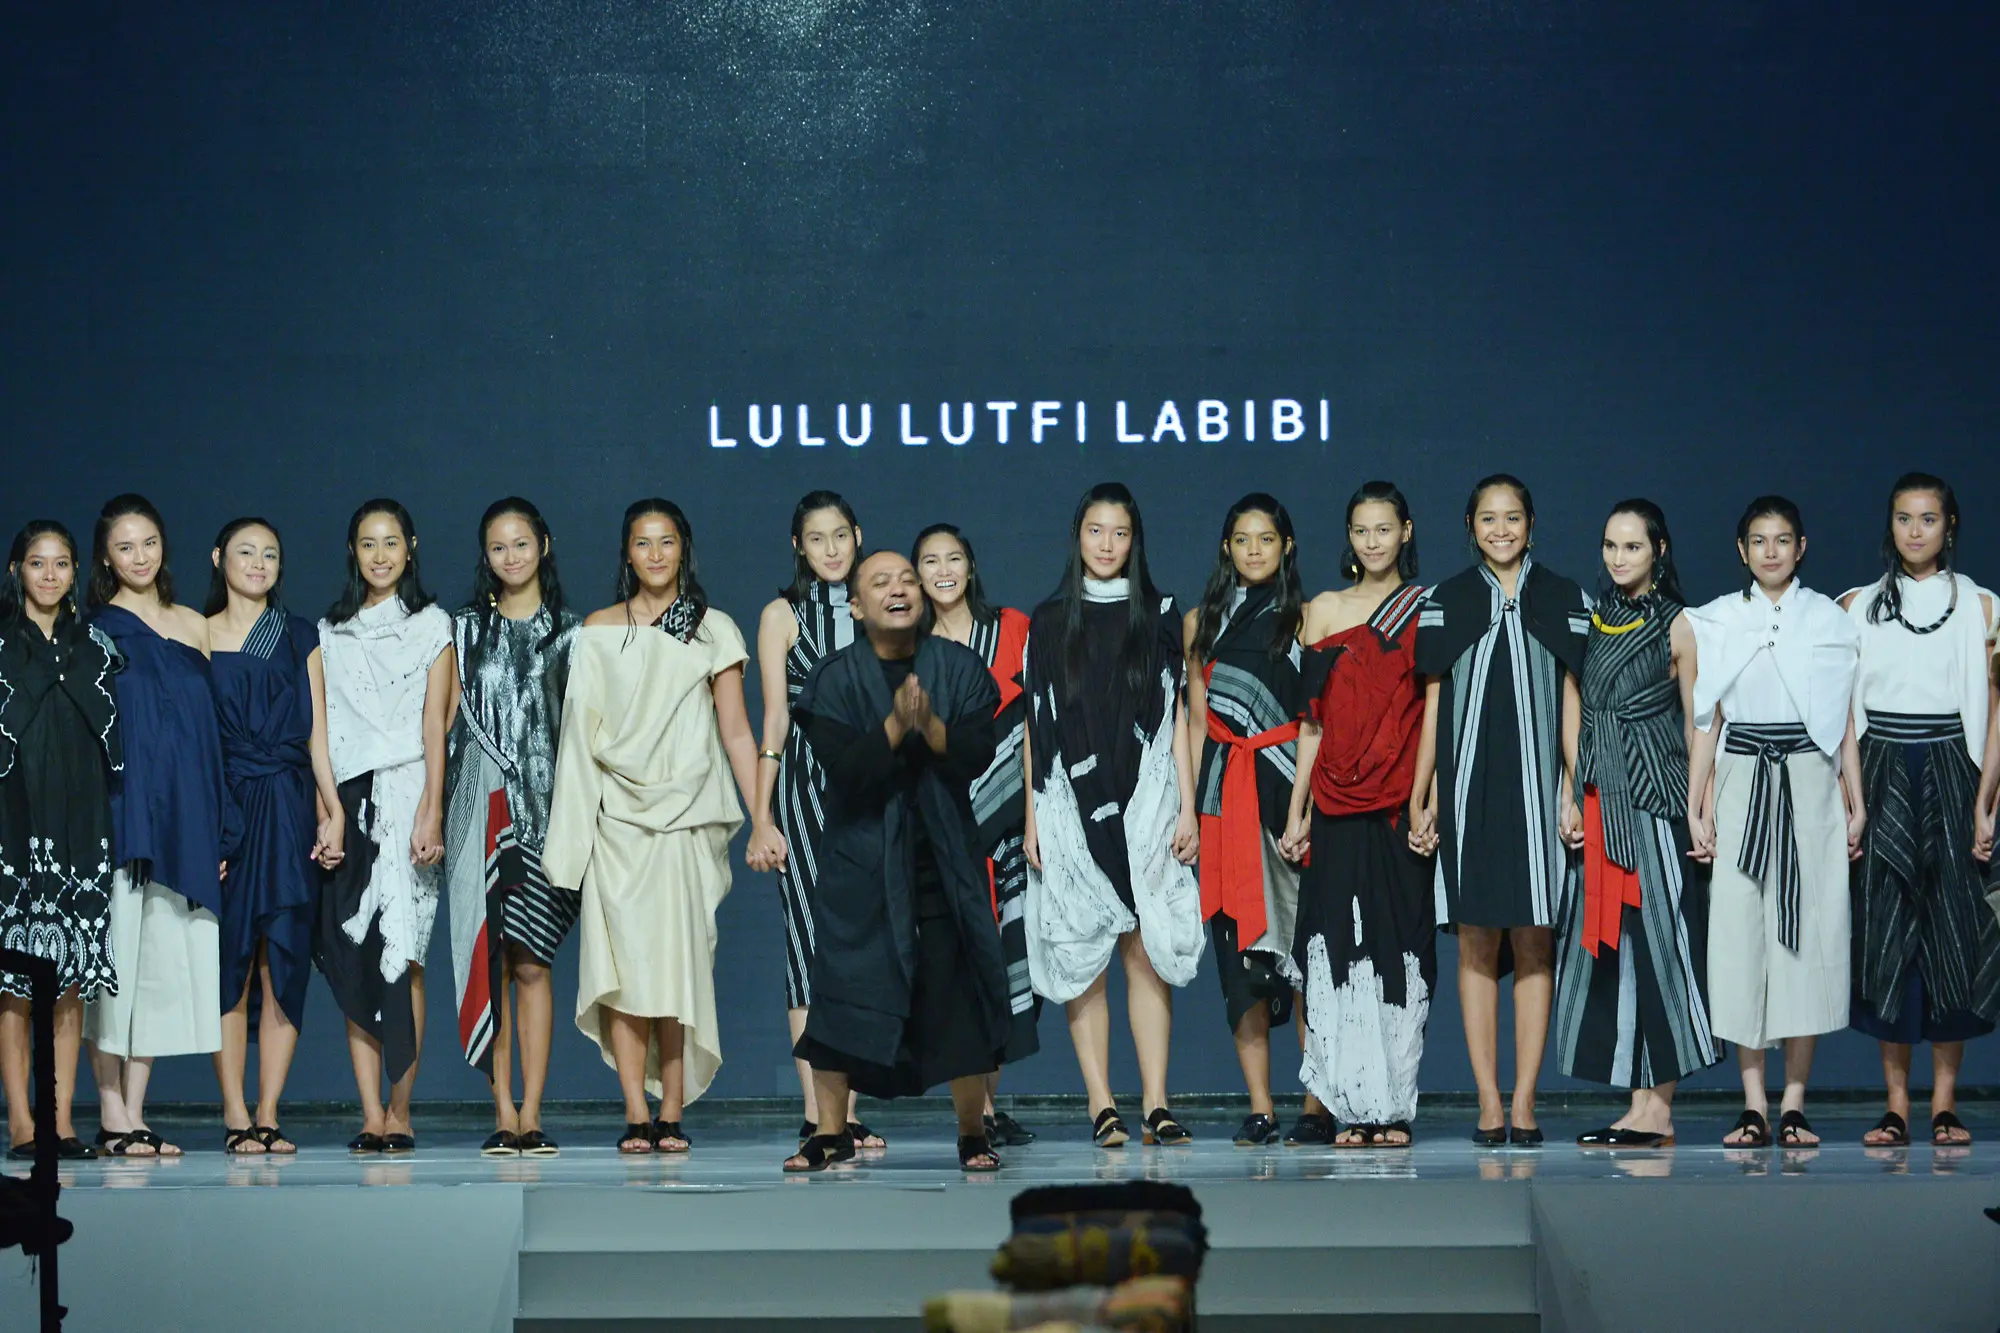 Fashion show tunggal bertema Perjalanan dari Lulu Lutfi Labibi menampilkan 42 koleksi busana lurik.